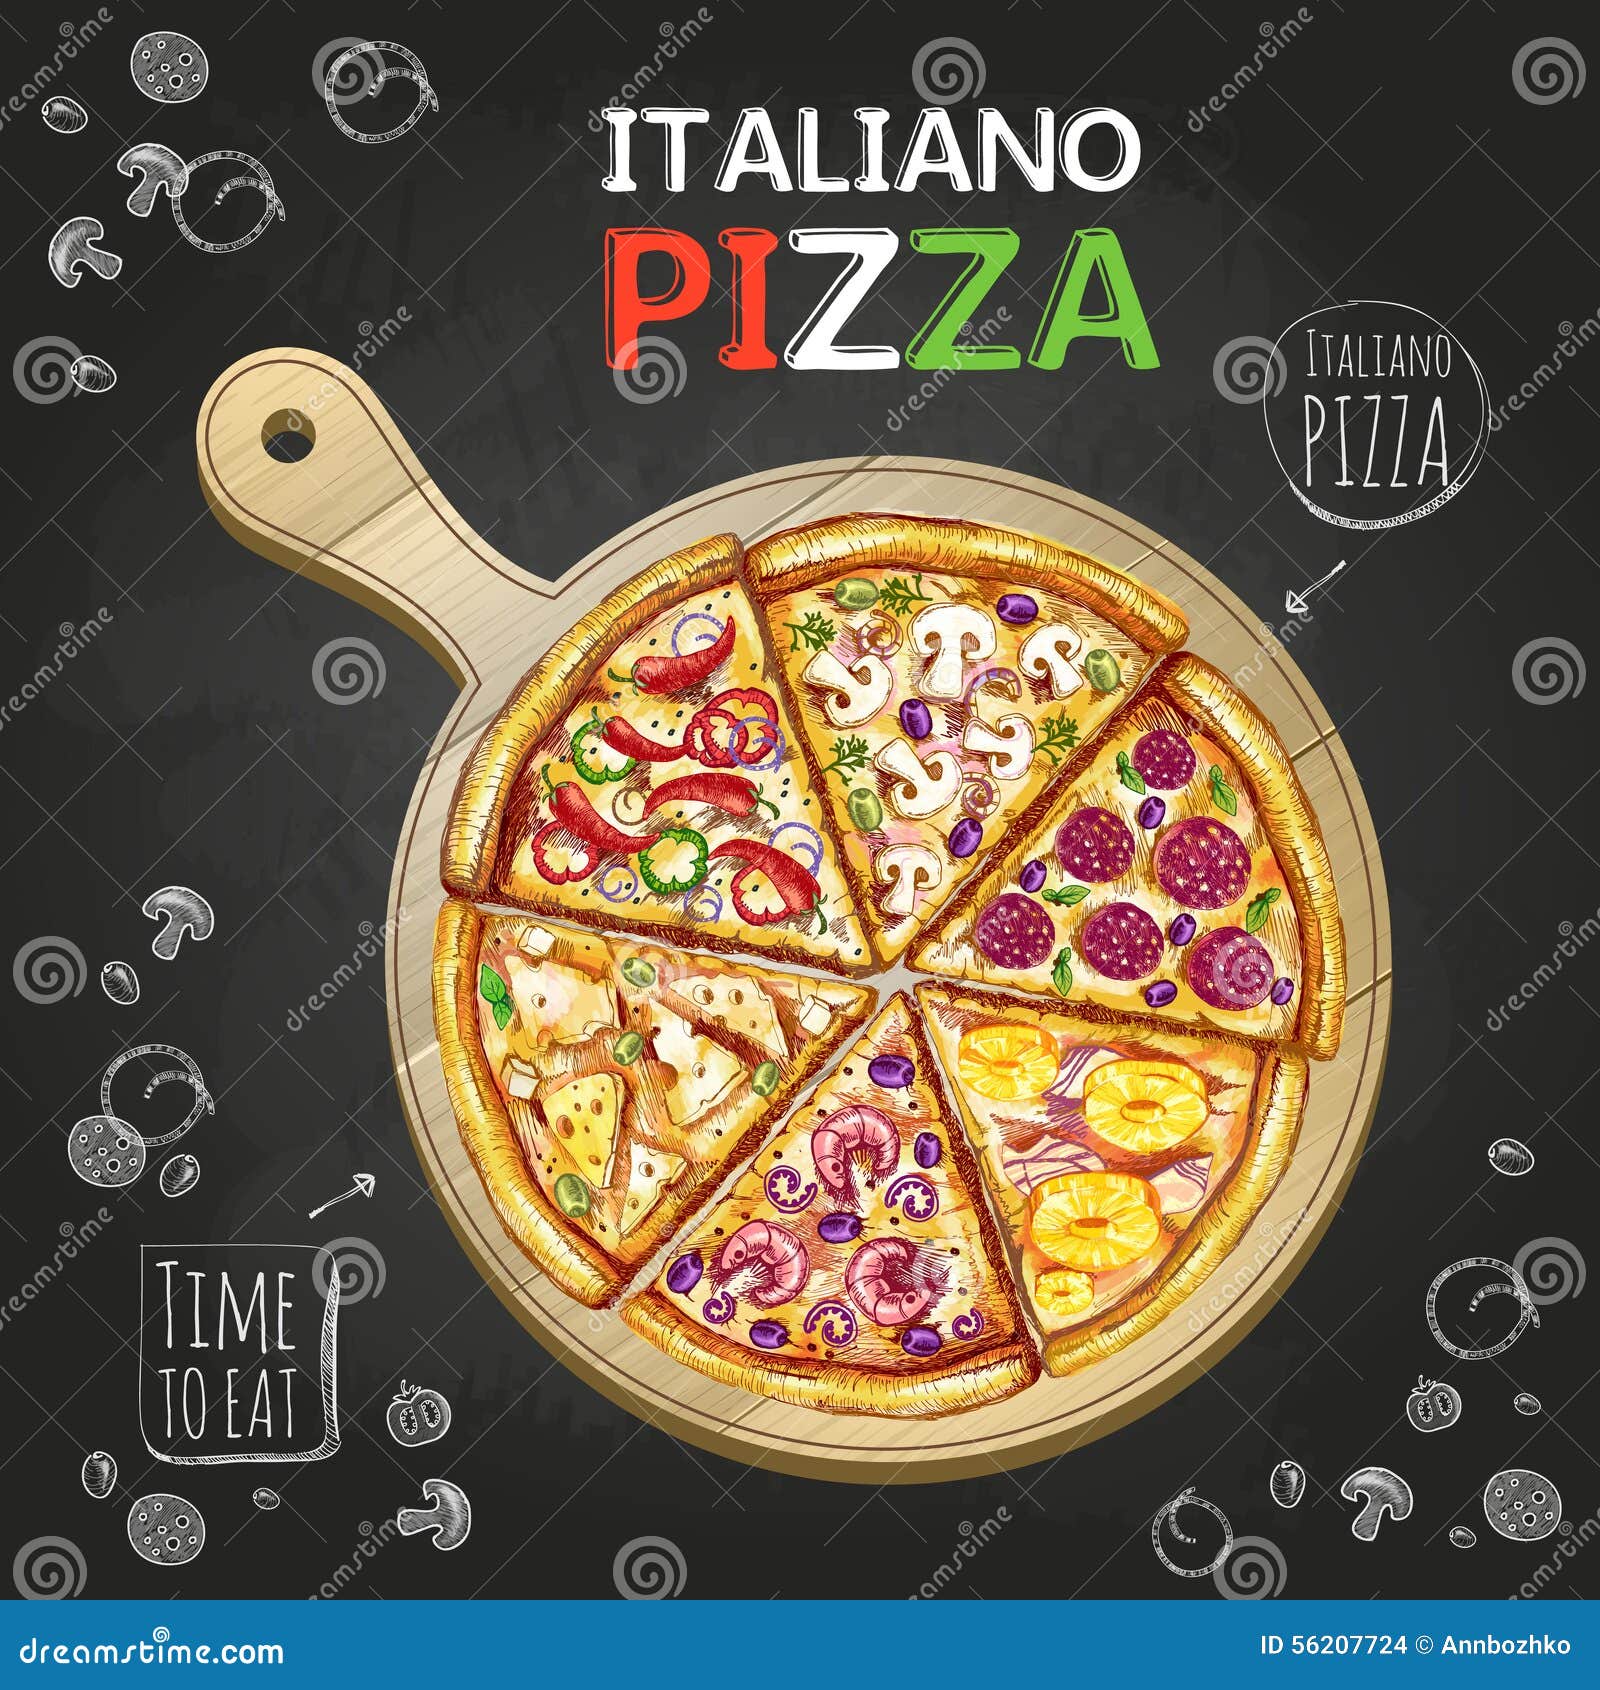 italiano pizza poster background